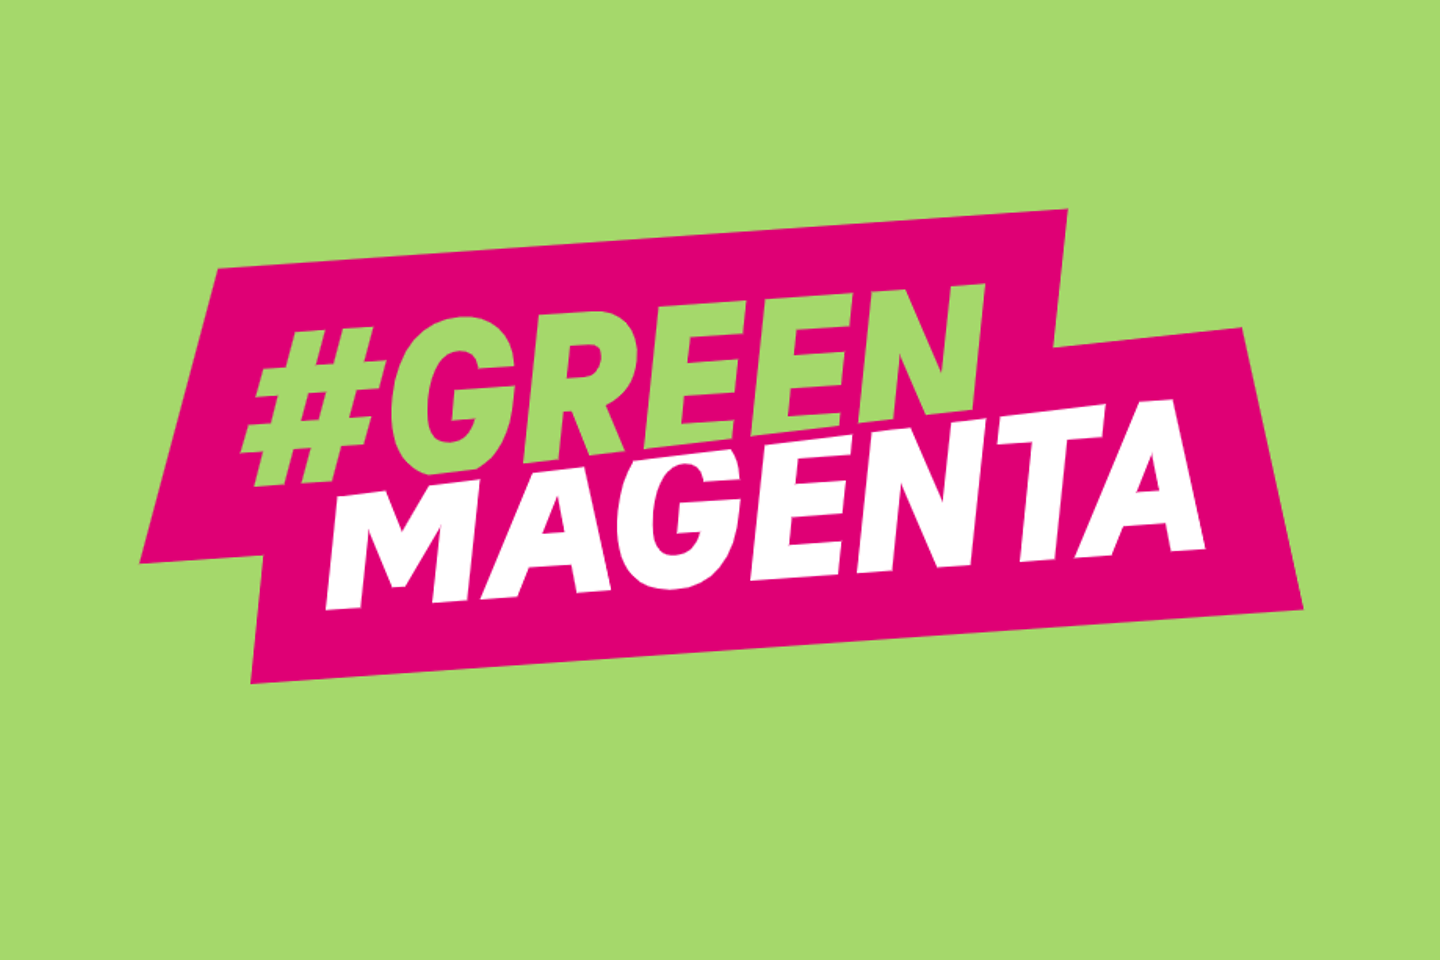 O logotipo #Green Magenta em um fundo verde.